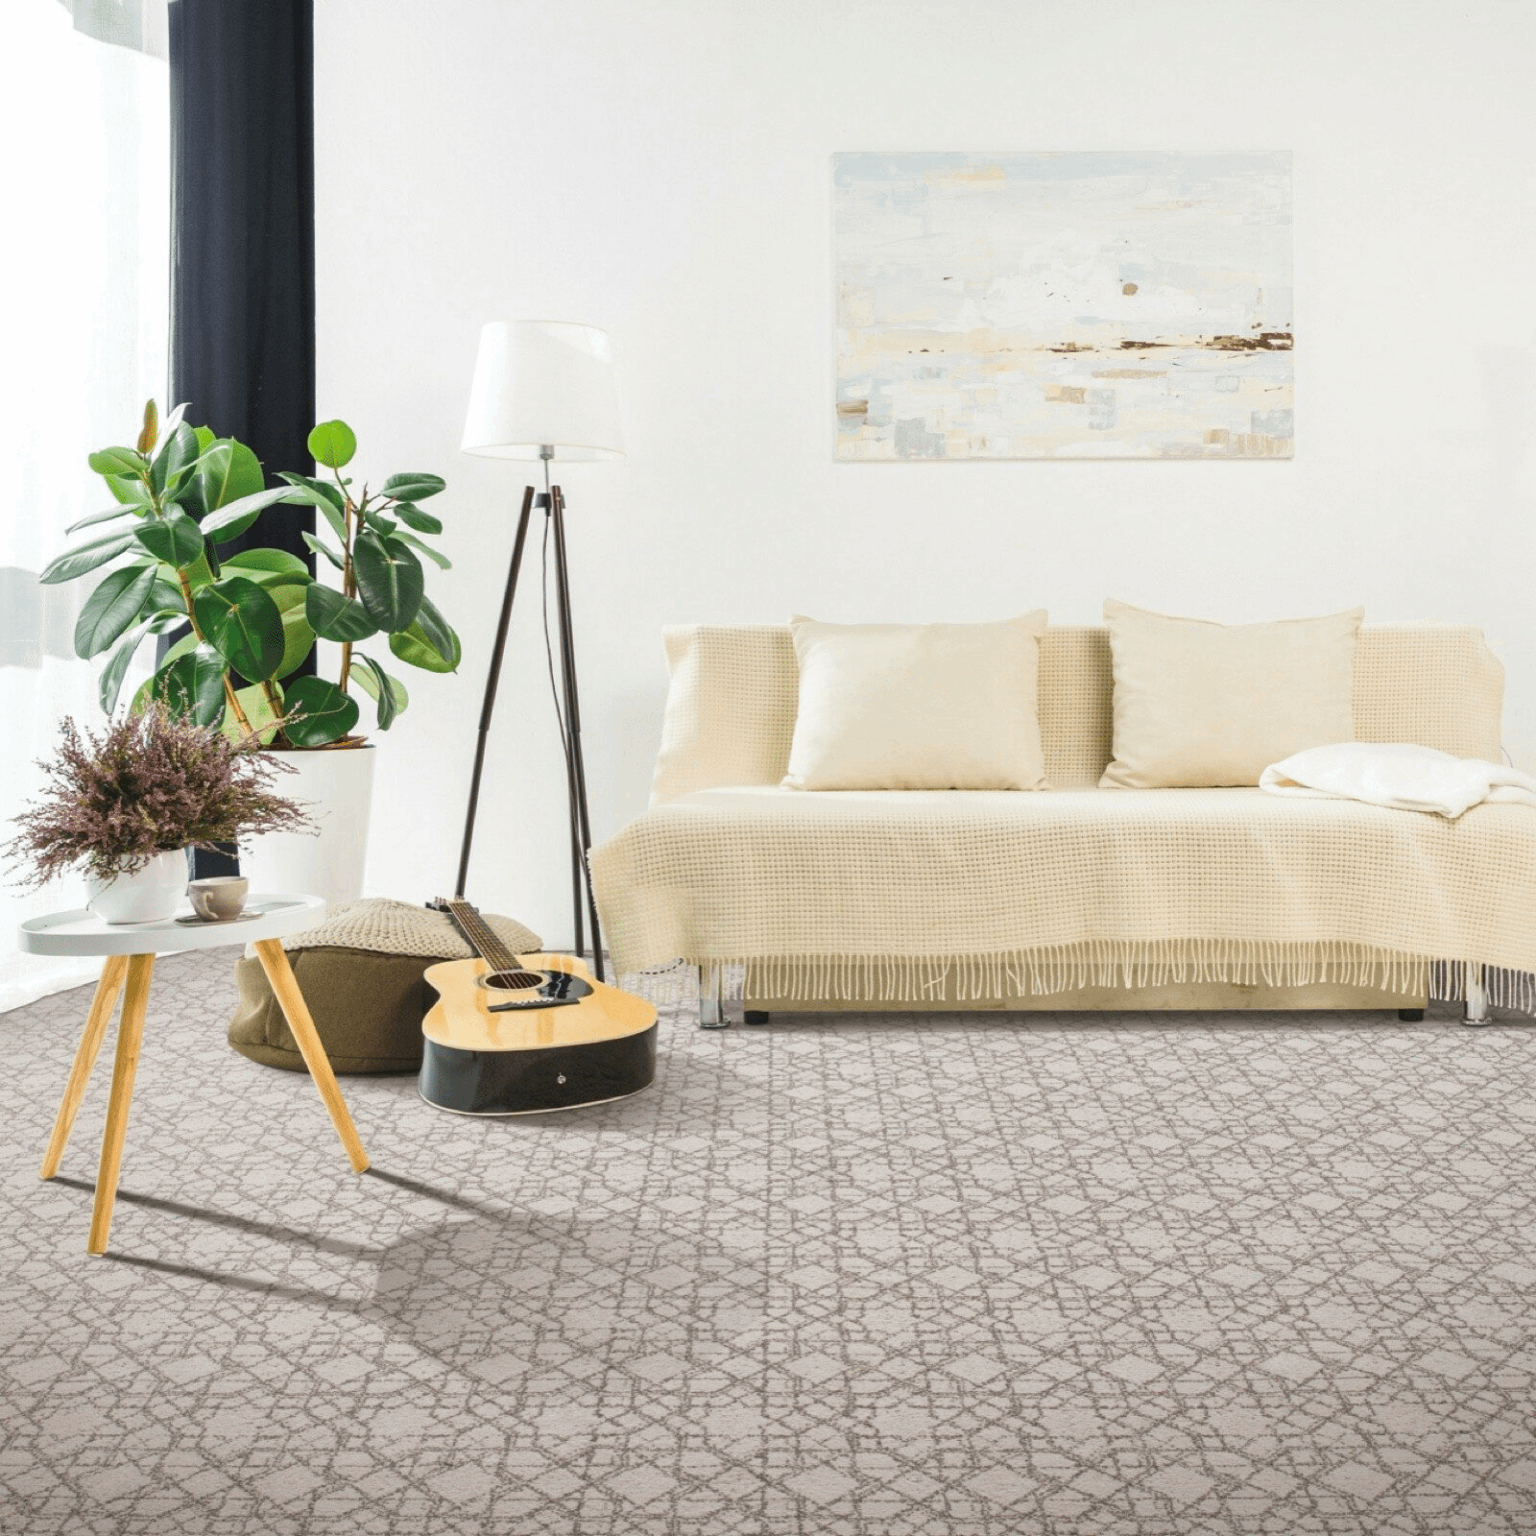 Carpet design